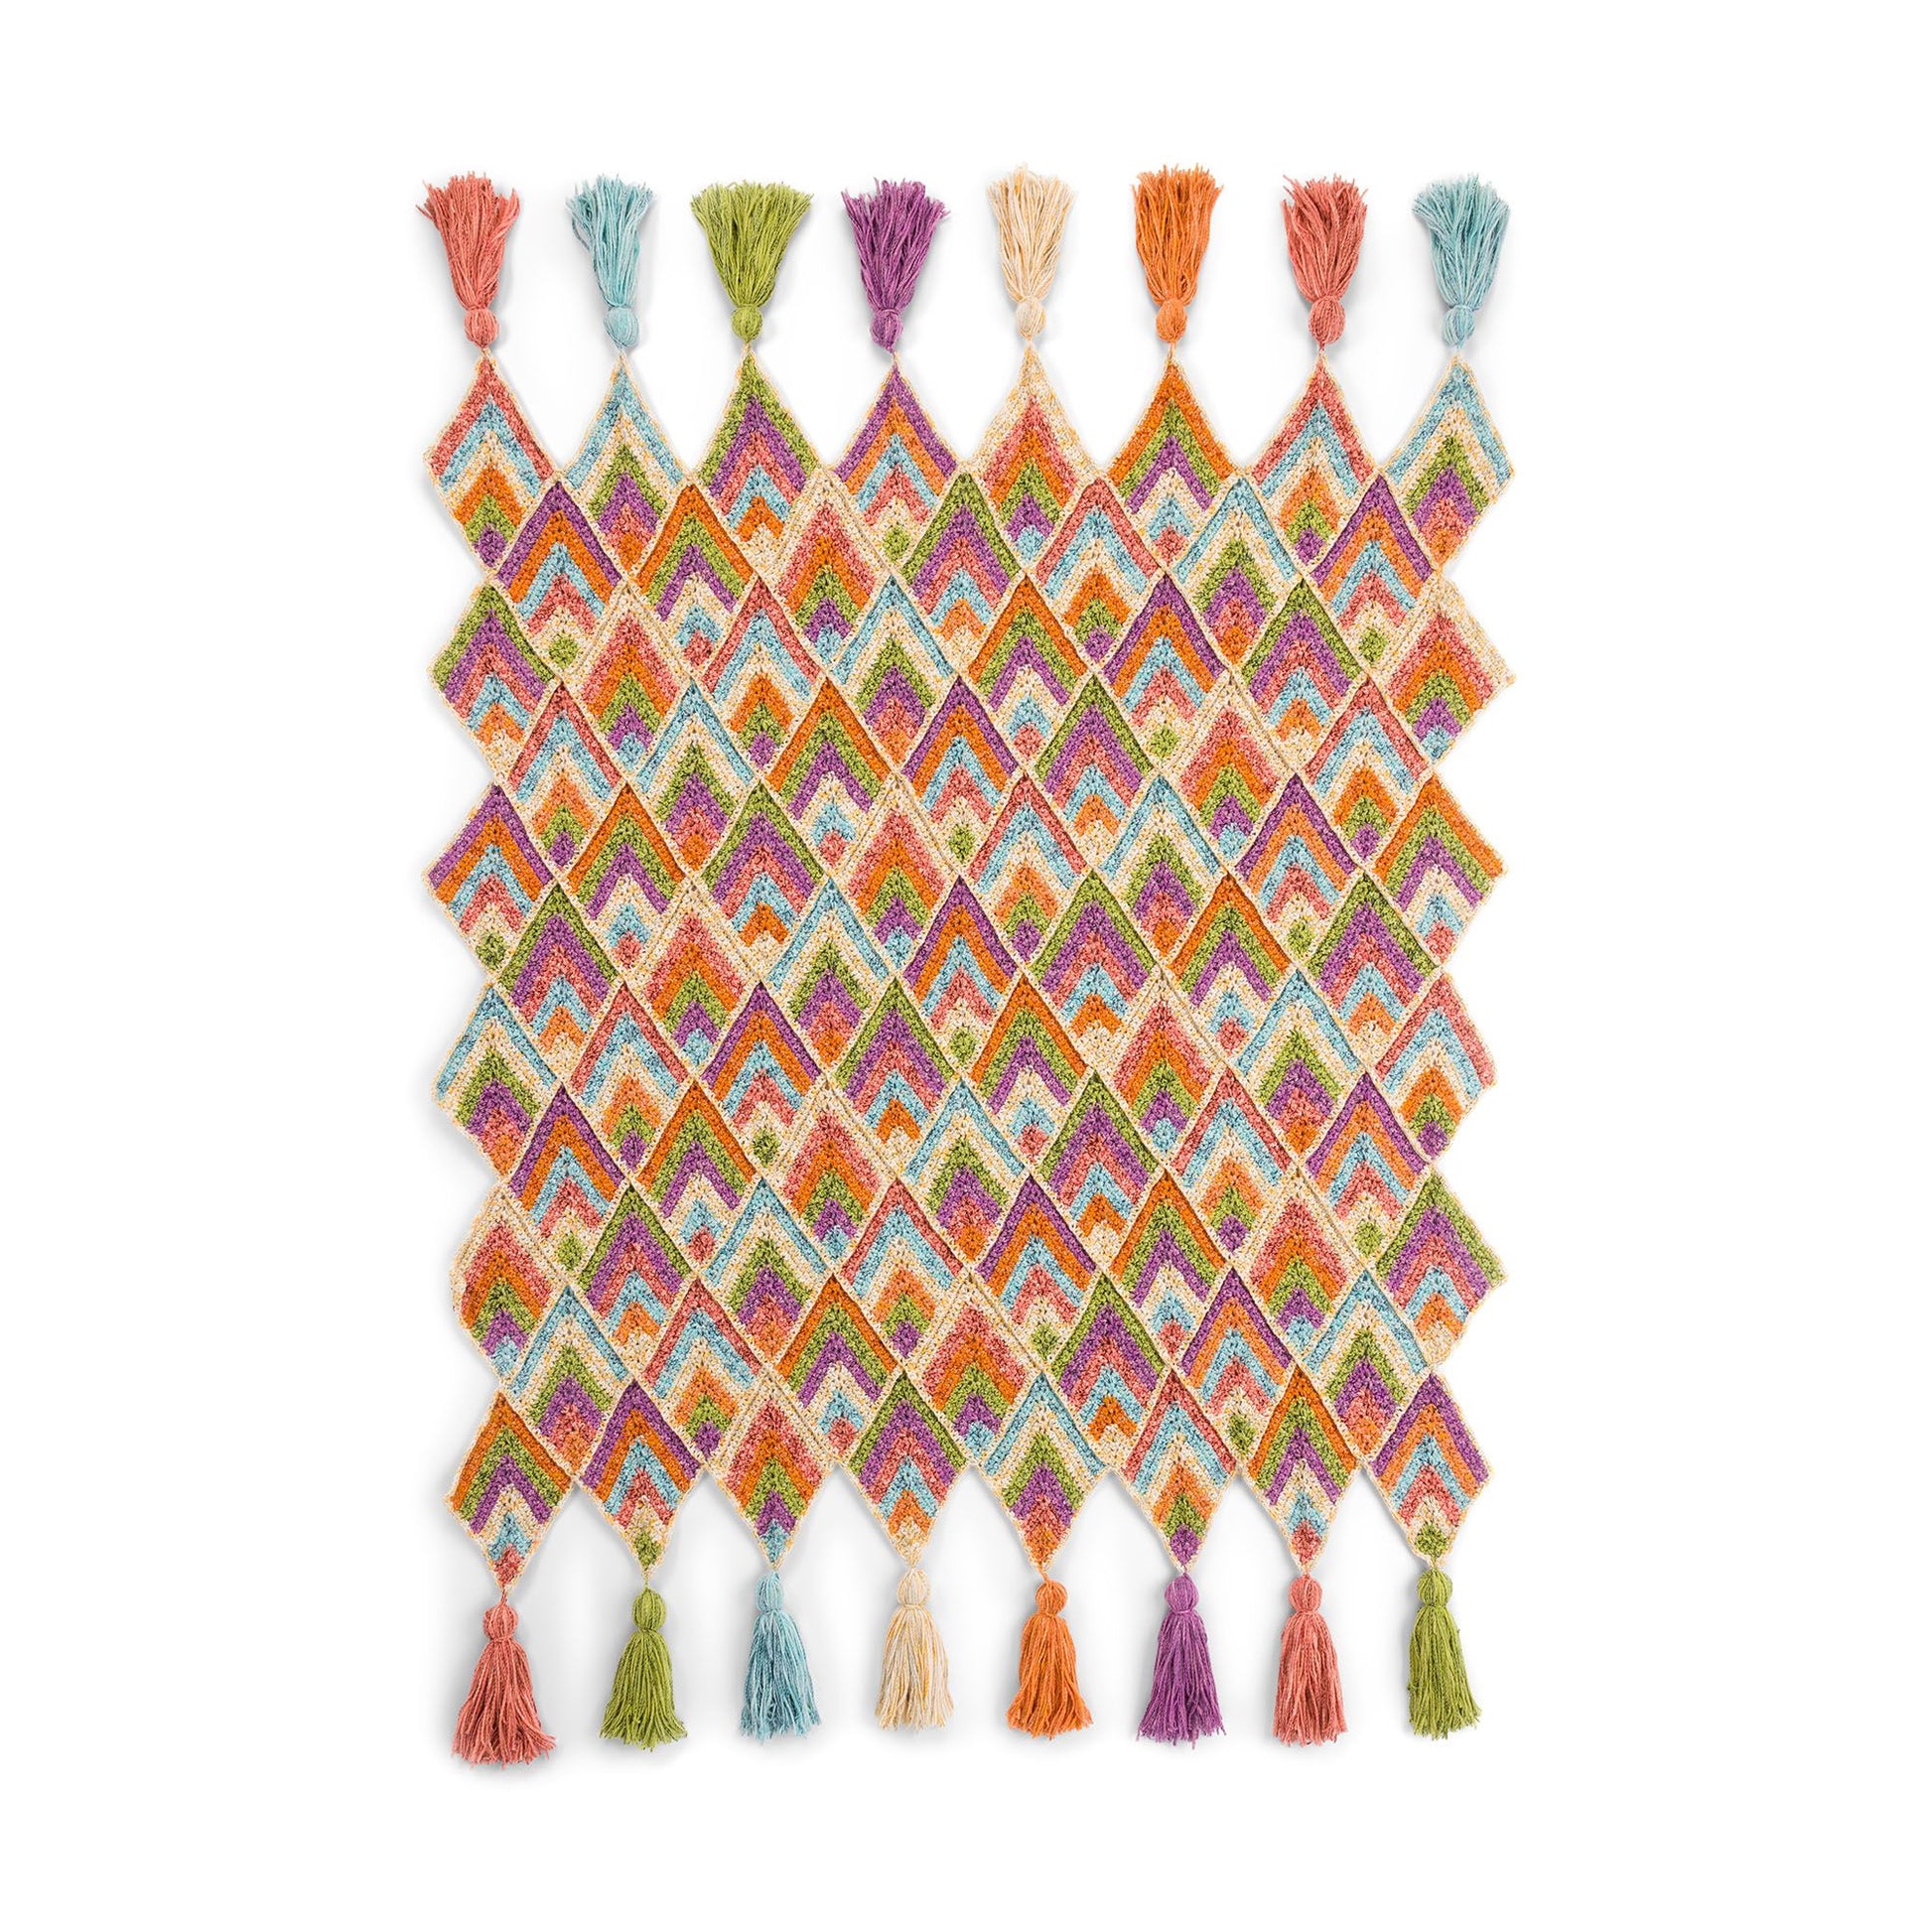 Free Bernat Peaks and Valleys Crochet Blanket Pattern